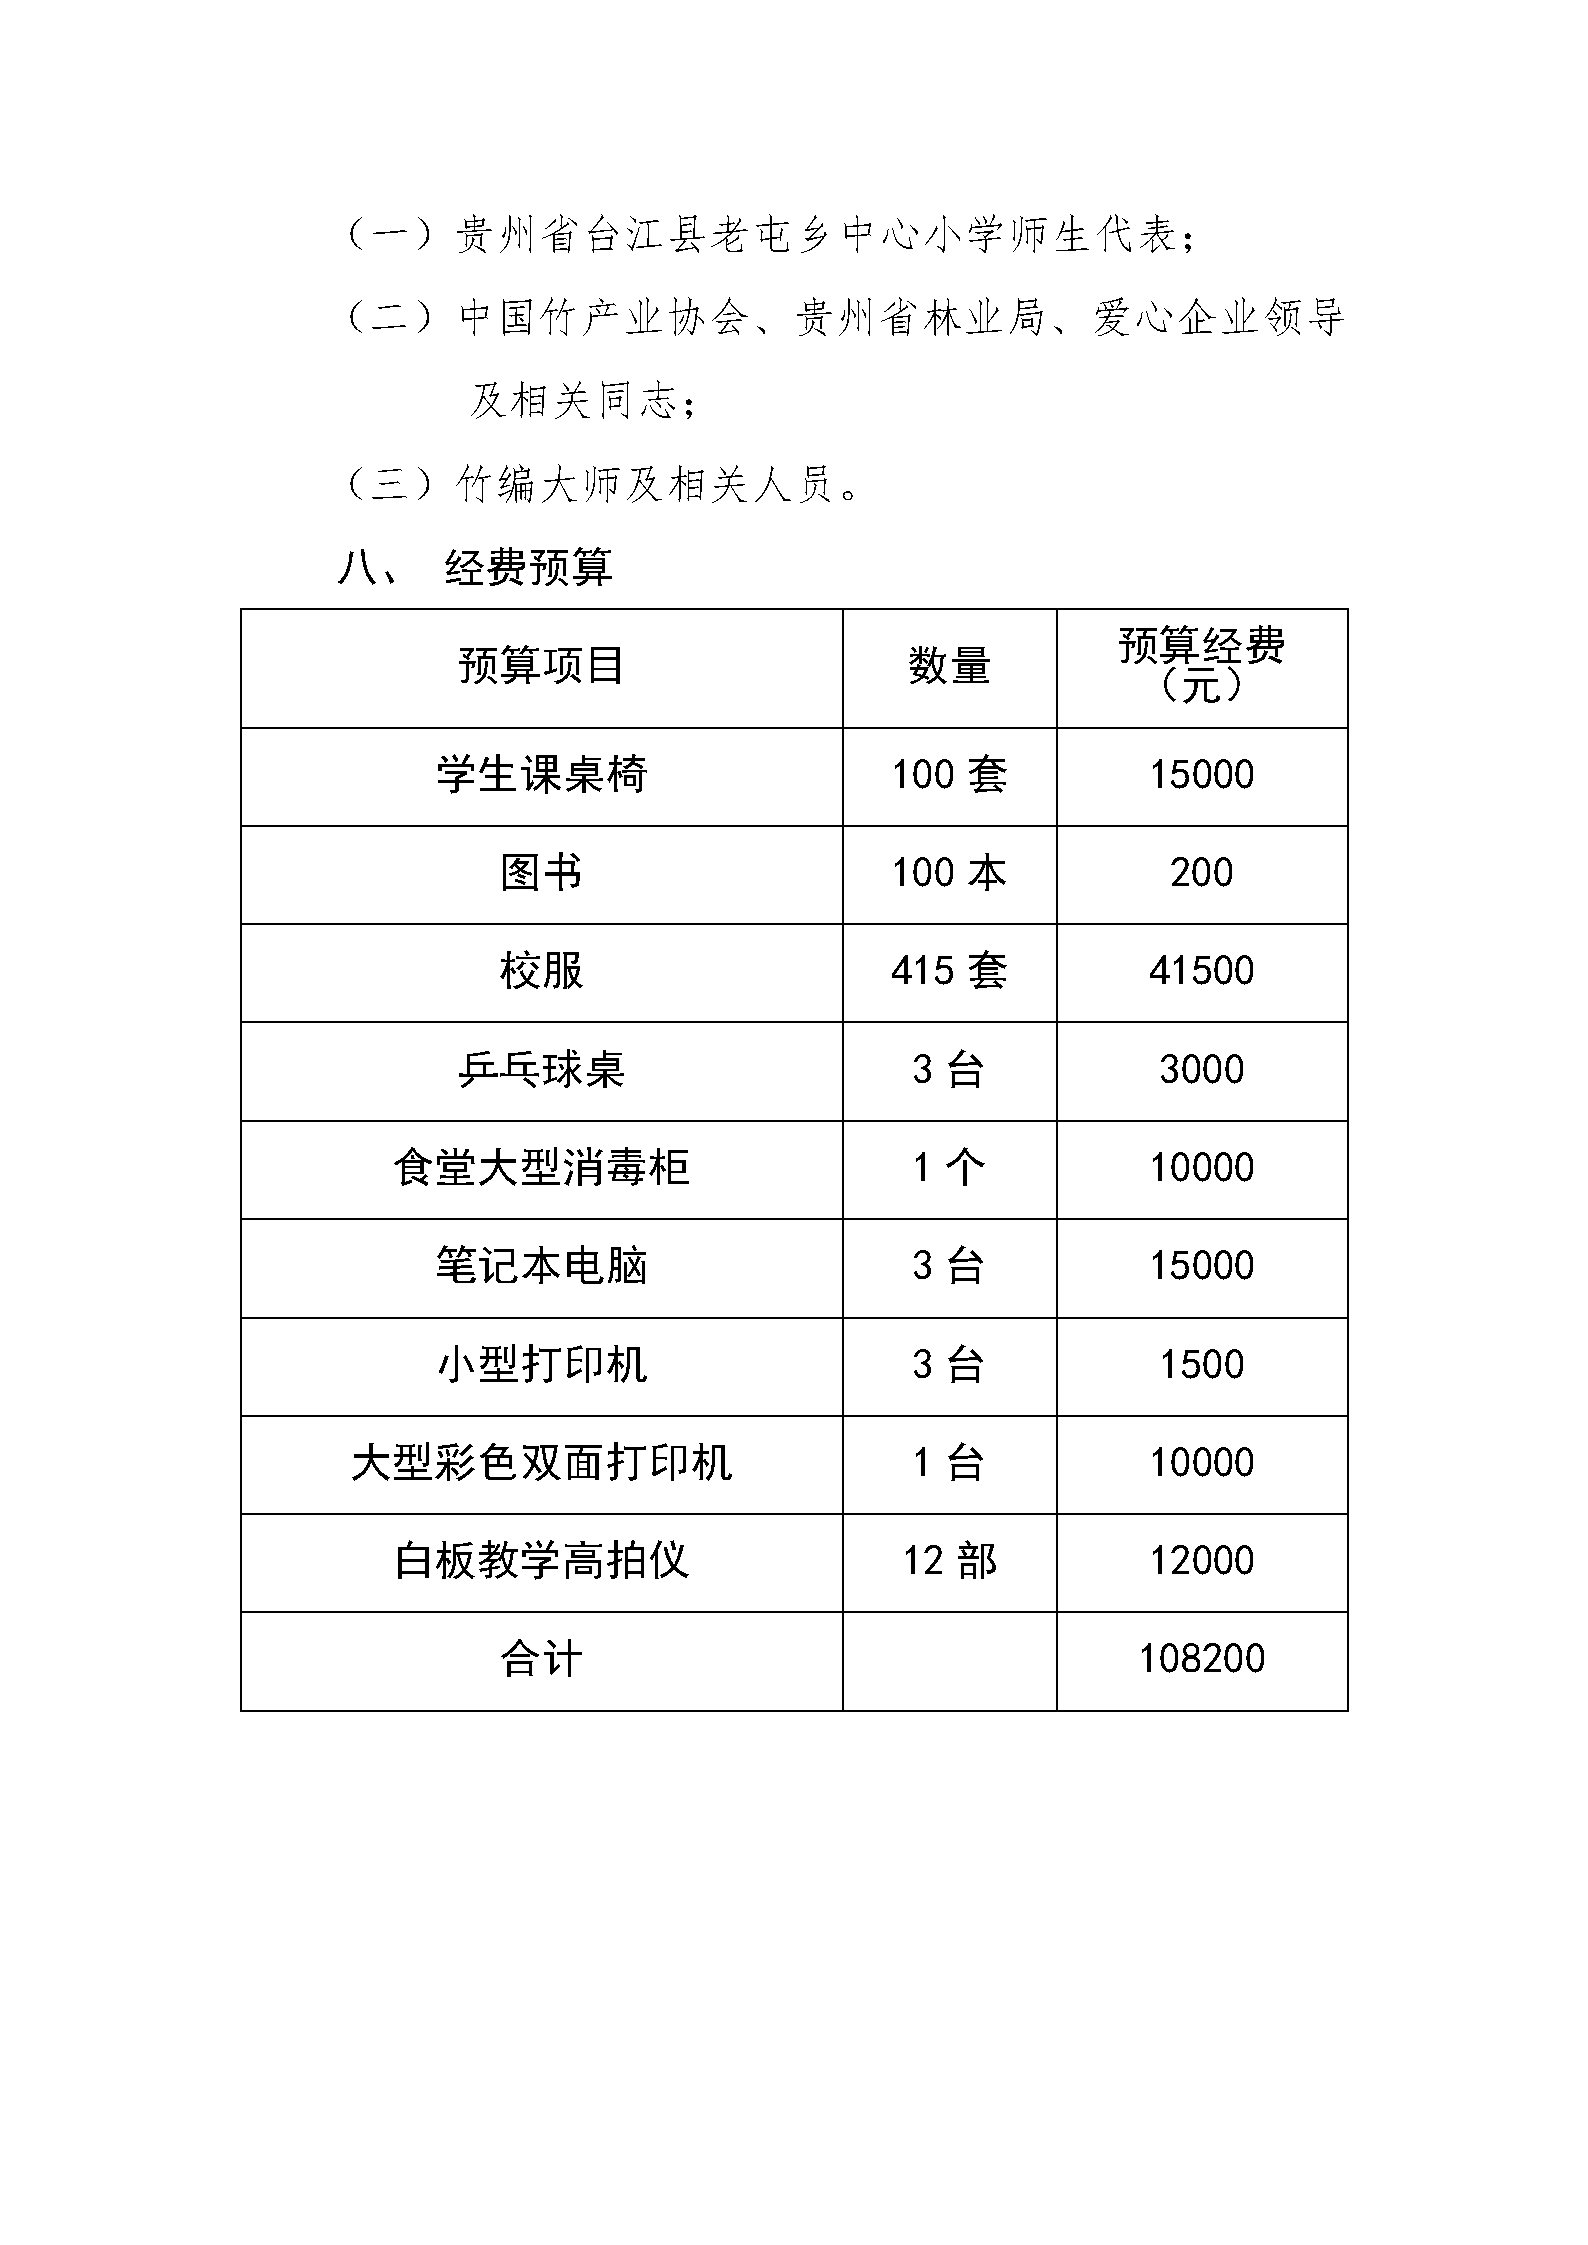 中国竹产业协会公益助学活动方案_Page4.jpg